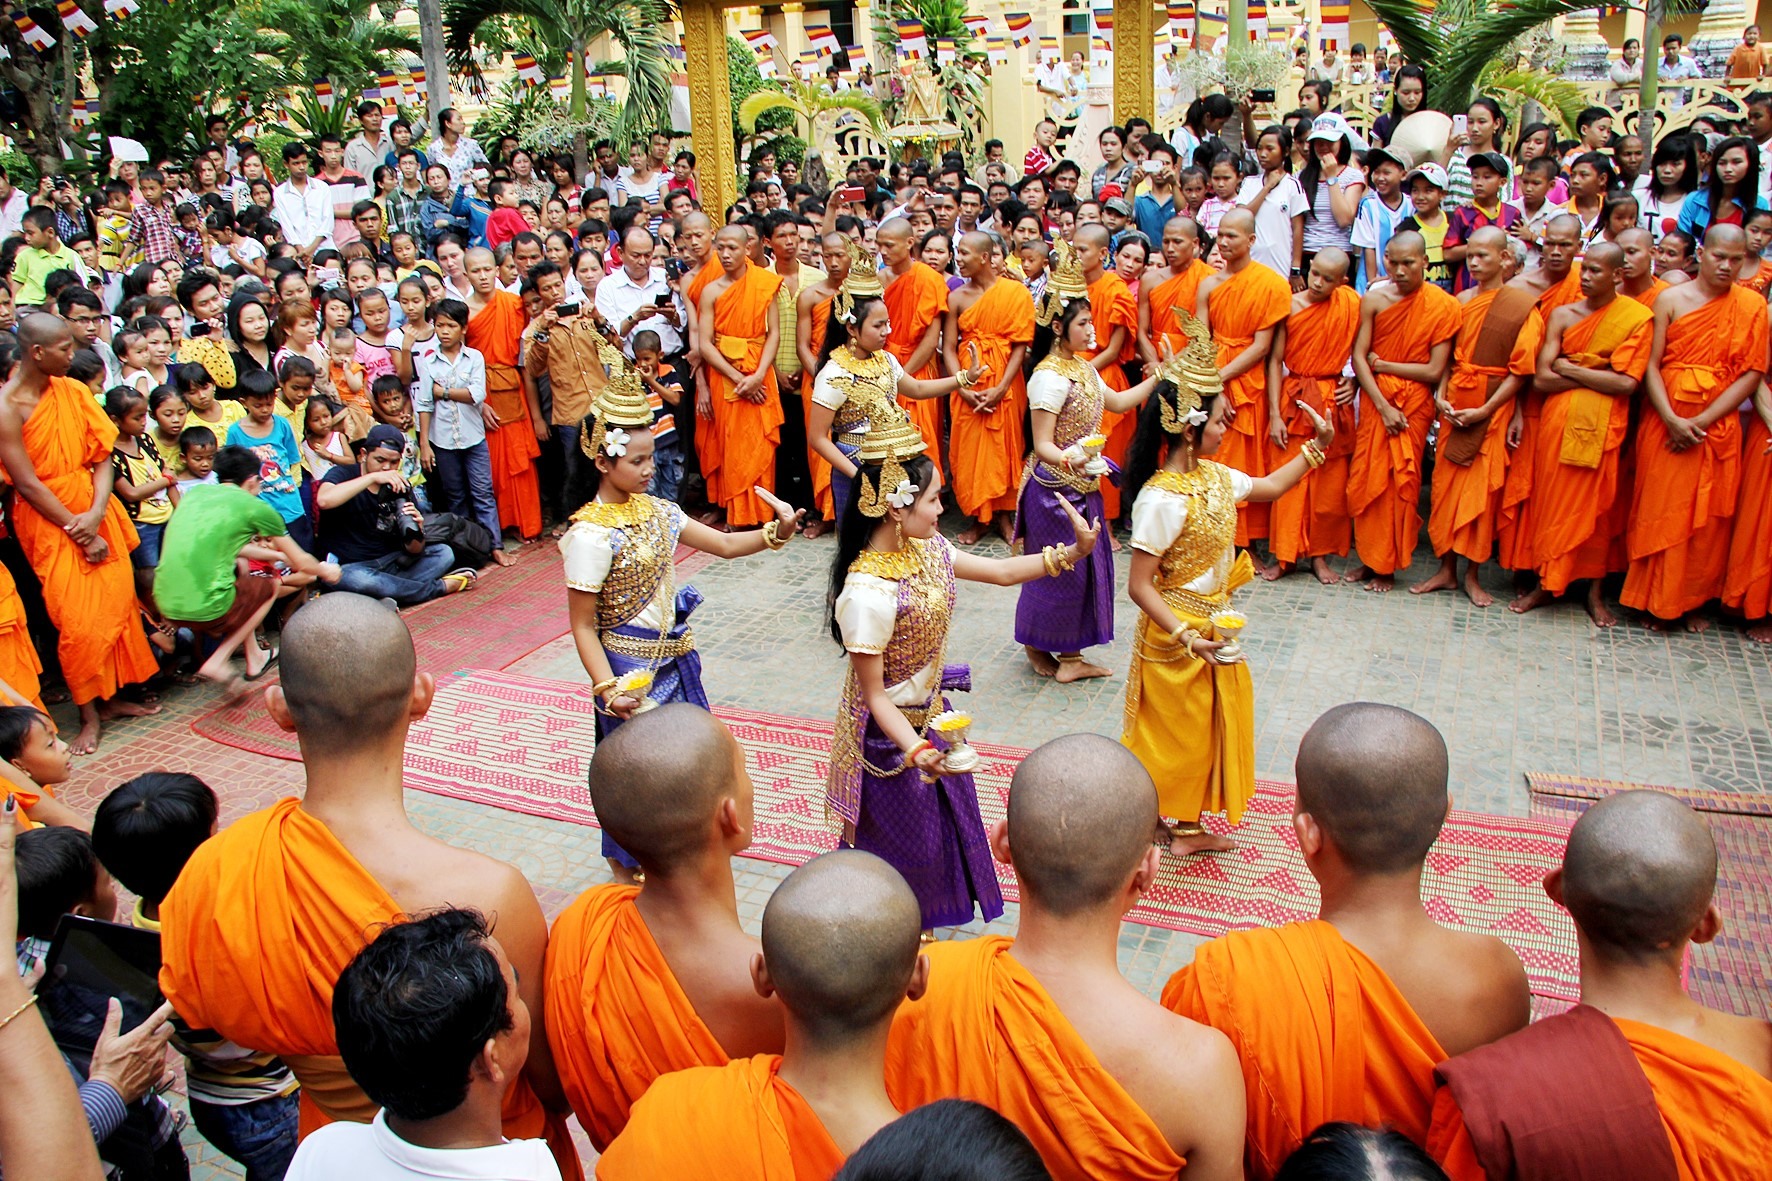 Chol Chnam Thmay là lễ hội mừng năm mới theo lịch cổ truyền của dân tộc Khmer.  Ngoài tôn giáo chính là Phật giáo, người Khmer còn tin rằng mỗi năm có một vị thần trên trời (Têvôđa) được sai xuống để chăm lo cho cuộc sống và con người trong năm đó, hết năm lại về trời để vị thần khác xuống hạ giới. Những ngày này trở thành, lễ hội truyền thống của cả cộng đồng. Tổ chức nhiều trò vui như đốt đèn trời, đốt ông lói, đánh quay lửa... Các cụ già kể cổ tích, thần thoại, chuyện cũ cho con cháu nghe. Trong ảnh: Một hoạt động mừng tết Chol Chnam Thmay tại một ngôi chùa Khmer ở Trà Vinh trong năm 2019. Ảnh: Duy Quang.